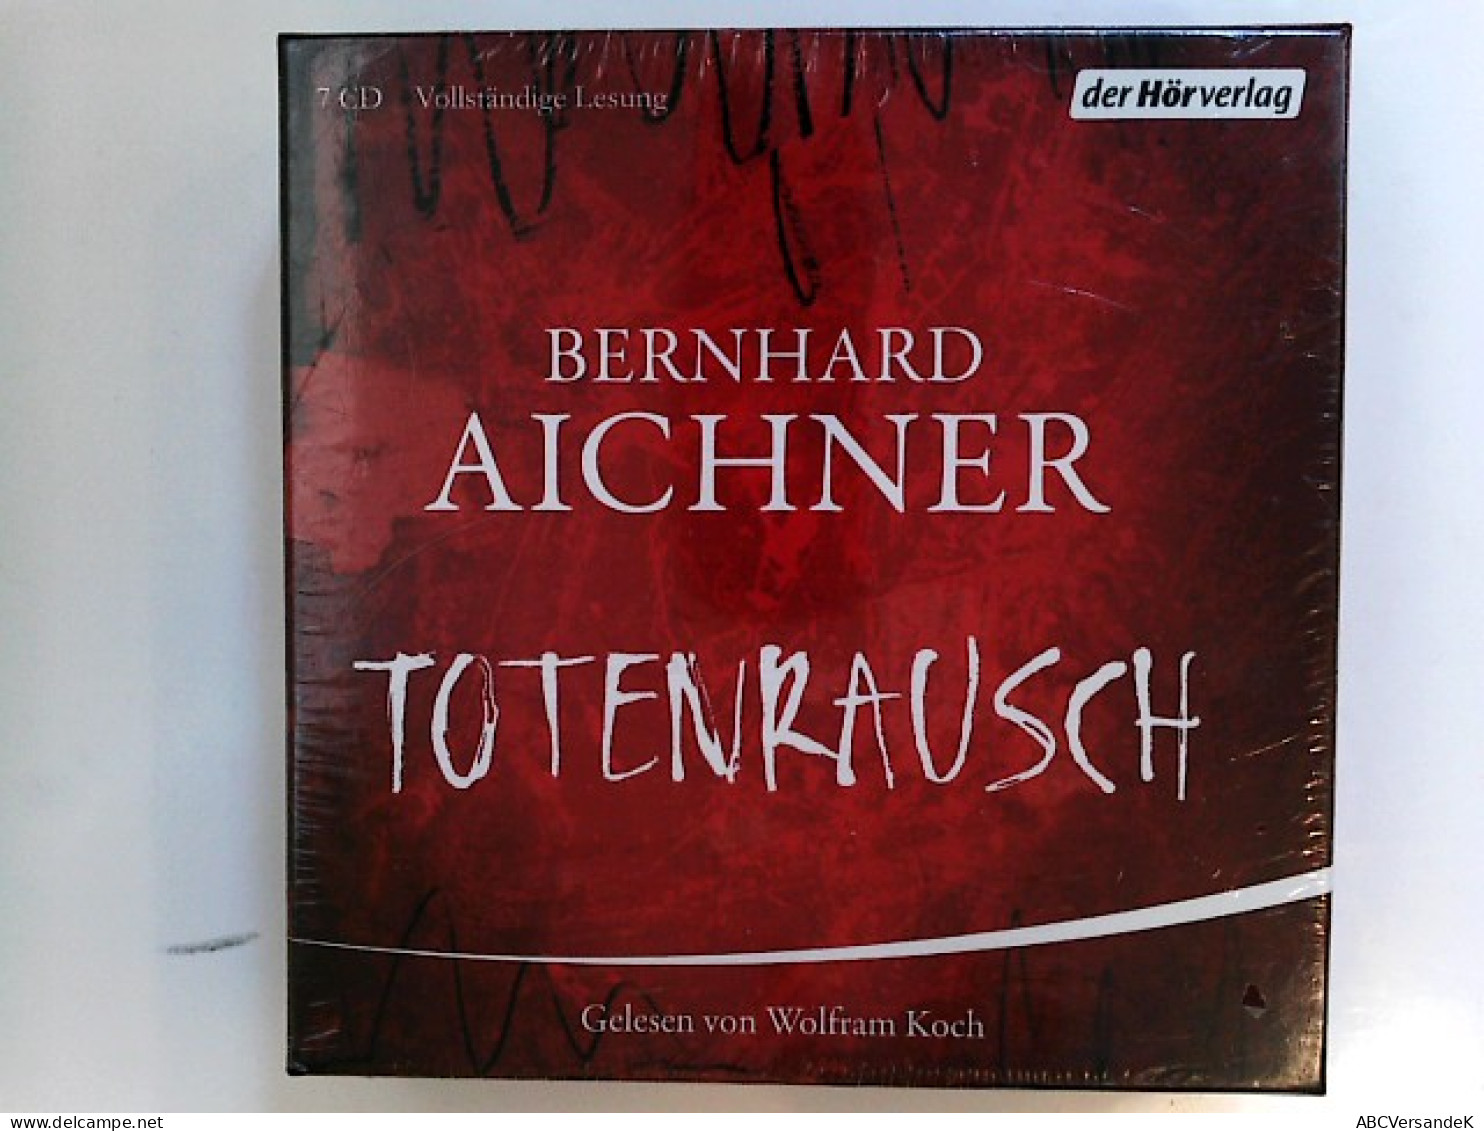 Totenrausch: Thriller (Die Totenfrau-Trilogie, Band 3) - CDs